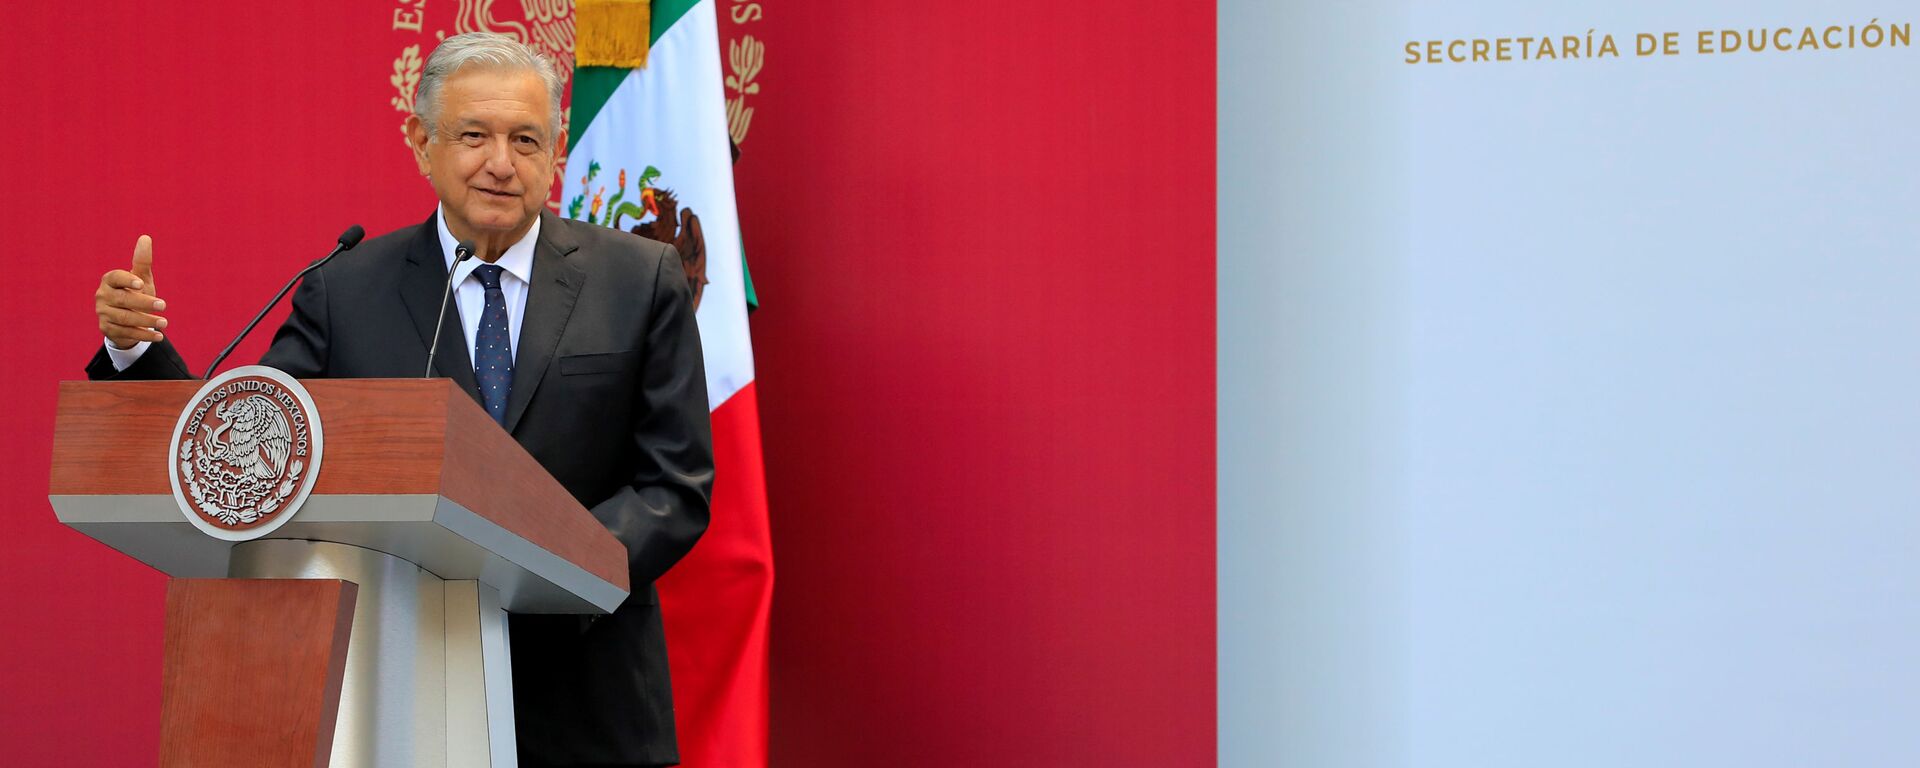 Andrés Manuel López Obrador, presidente de México - Sputnik Mundo, 1920, 18.07.2019